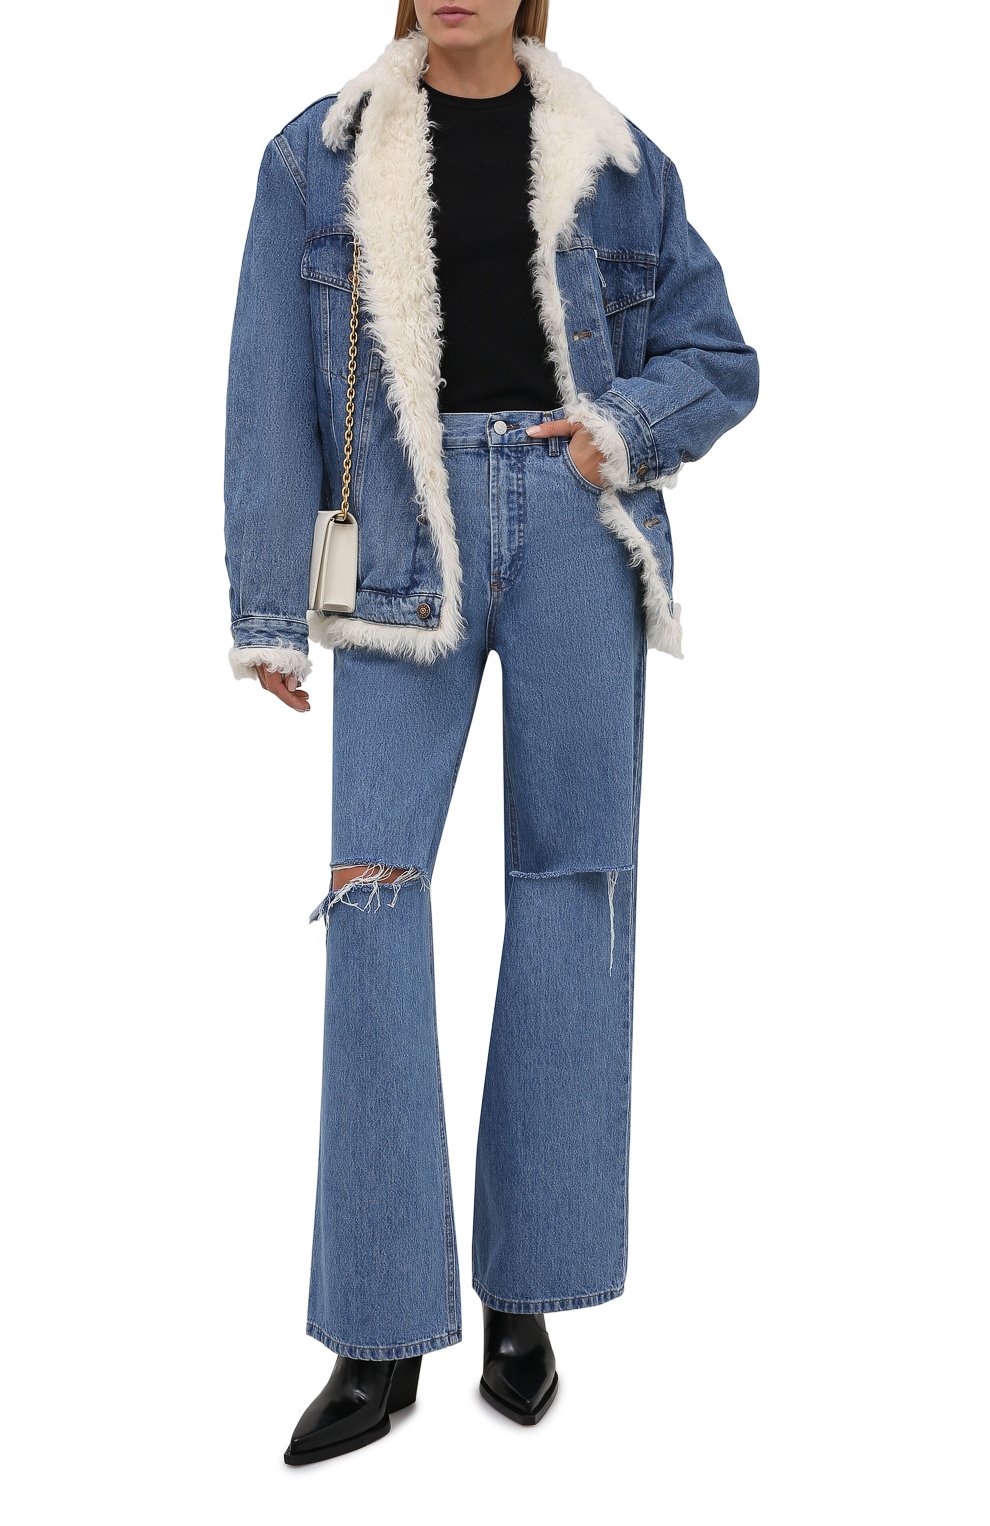 Женская голубая джинсовая куртка с подкладкой из овчины FORTE DEI MARMICOUTURE купить в интернет-магазине ЦУМ, арт. 21WF1396